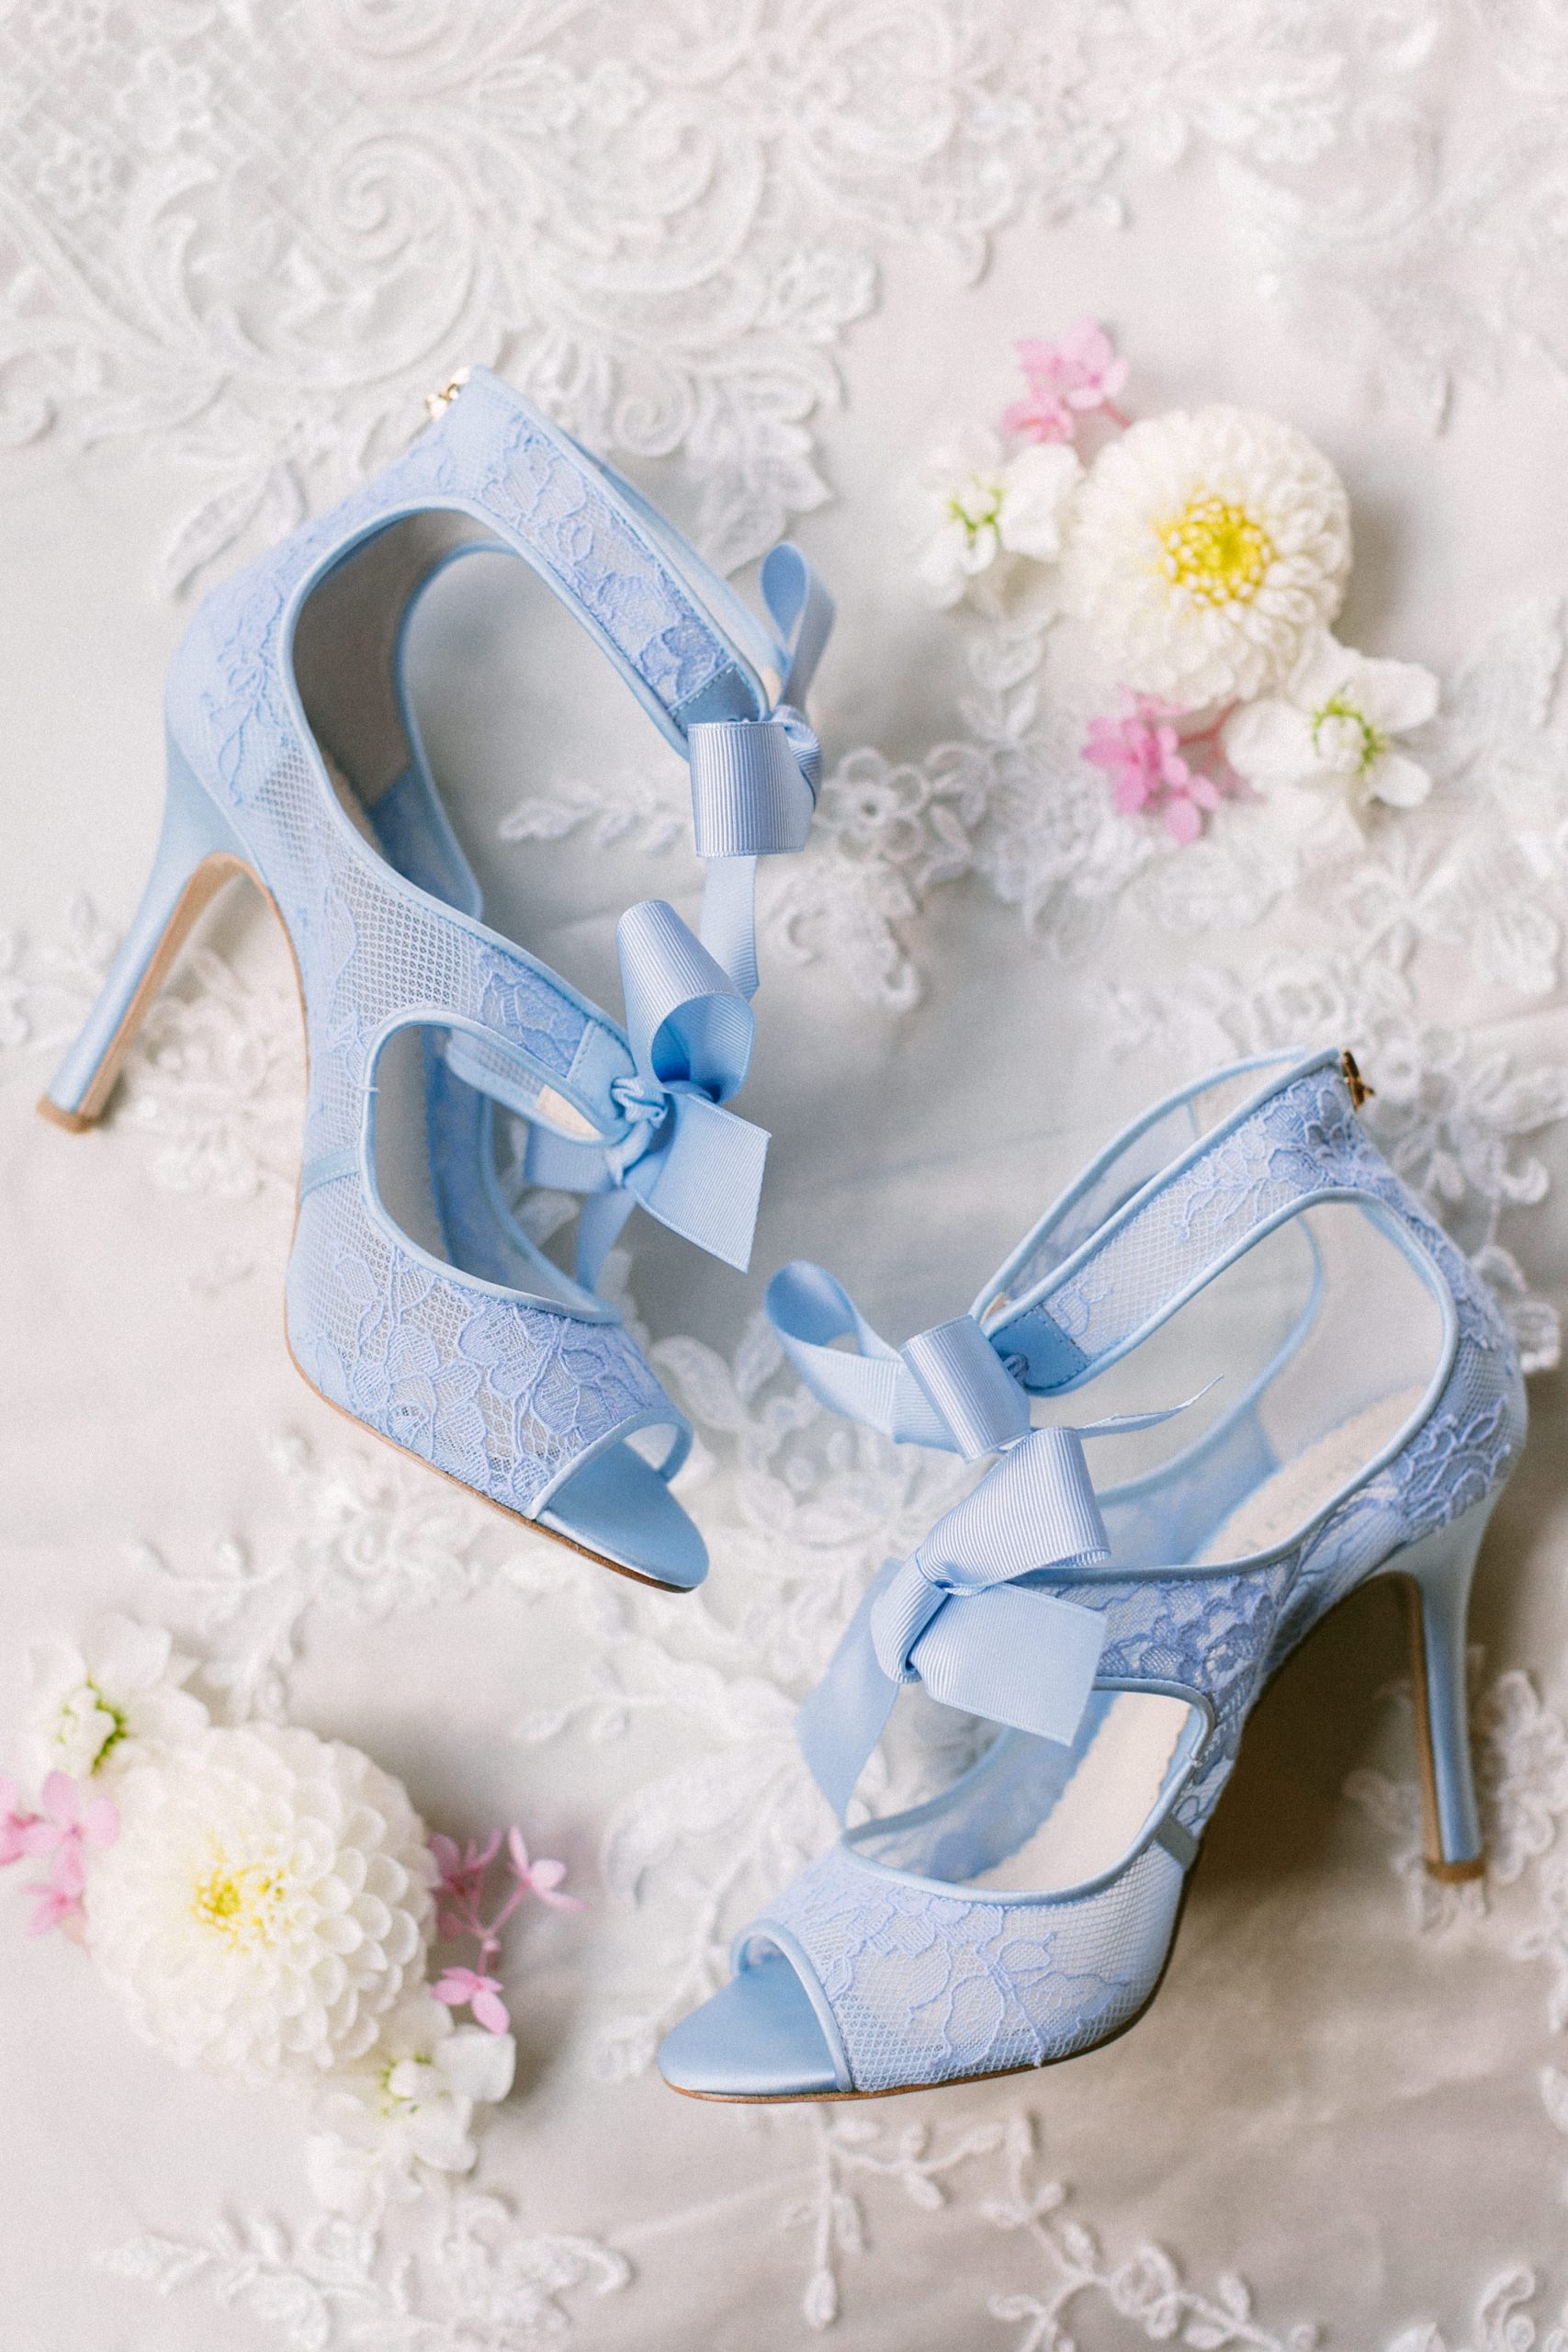 Cinderella Heels - The Top 10 Most Romantic Bridal Shoes